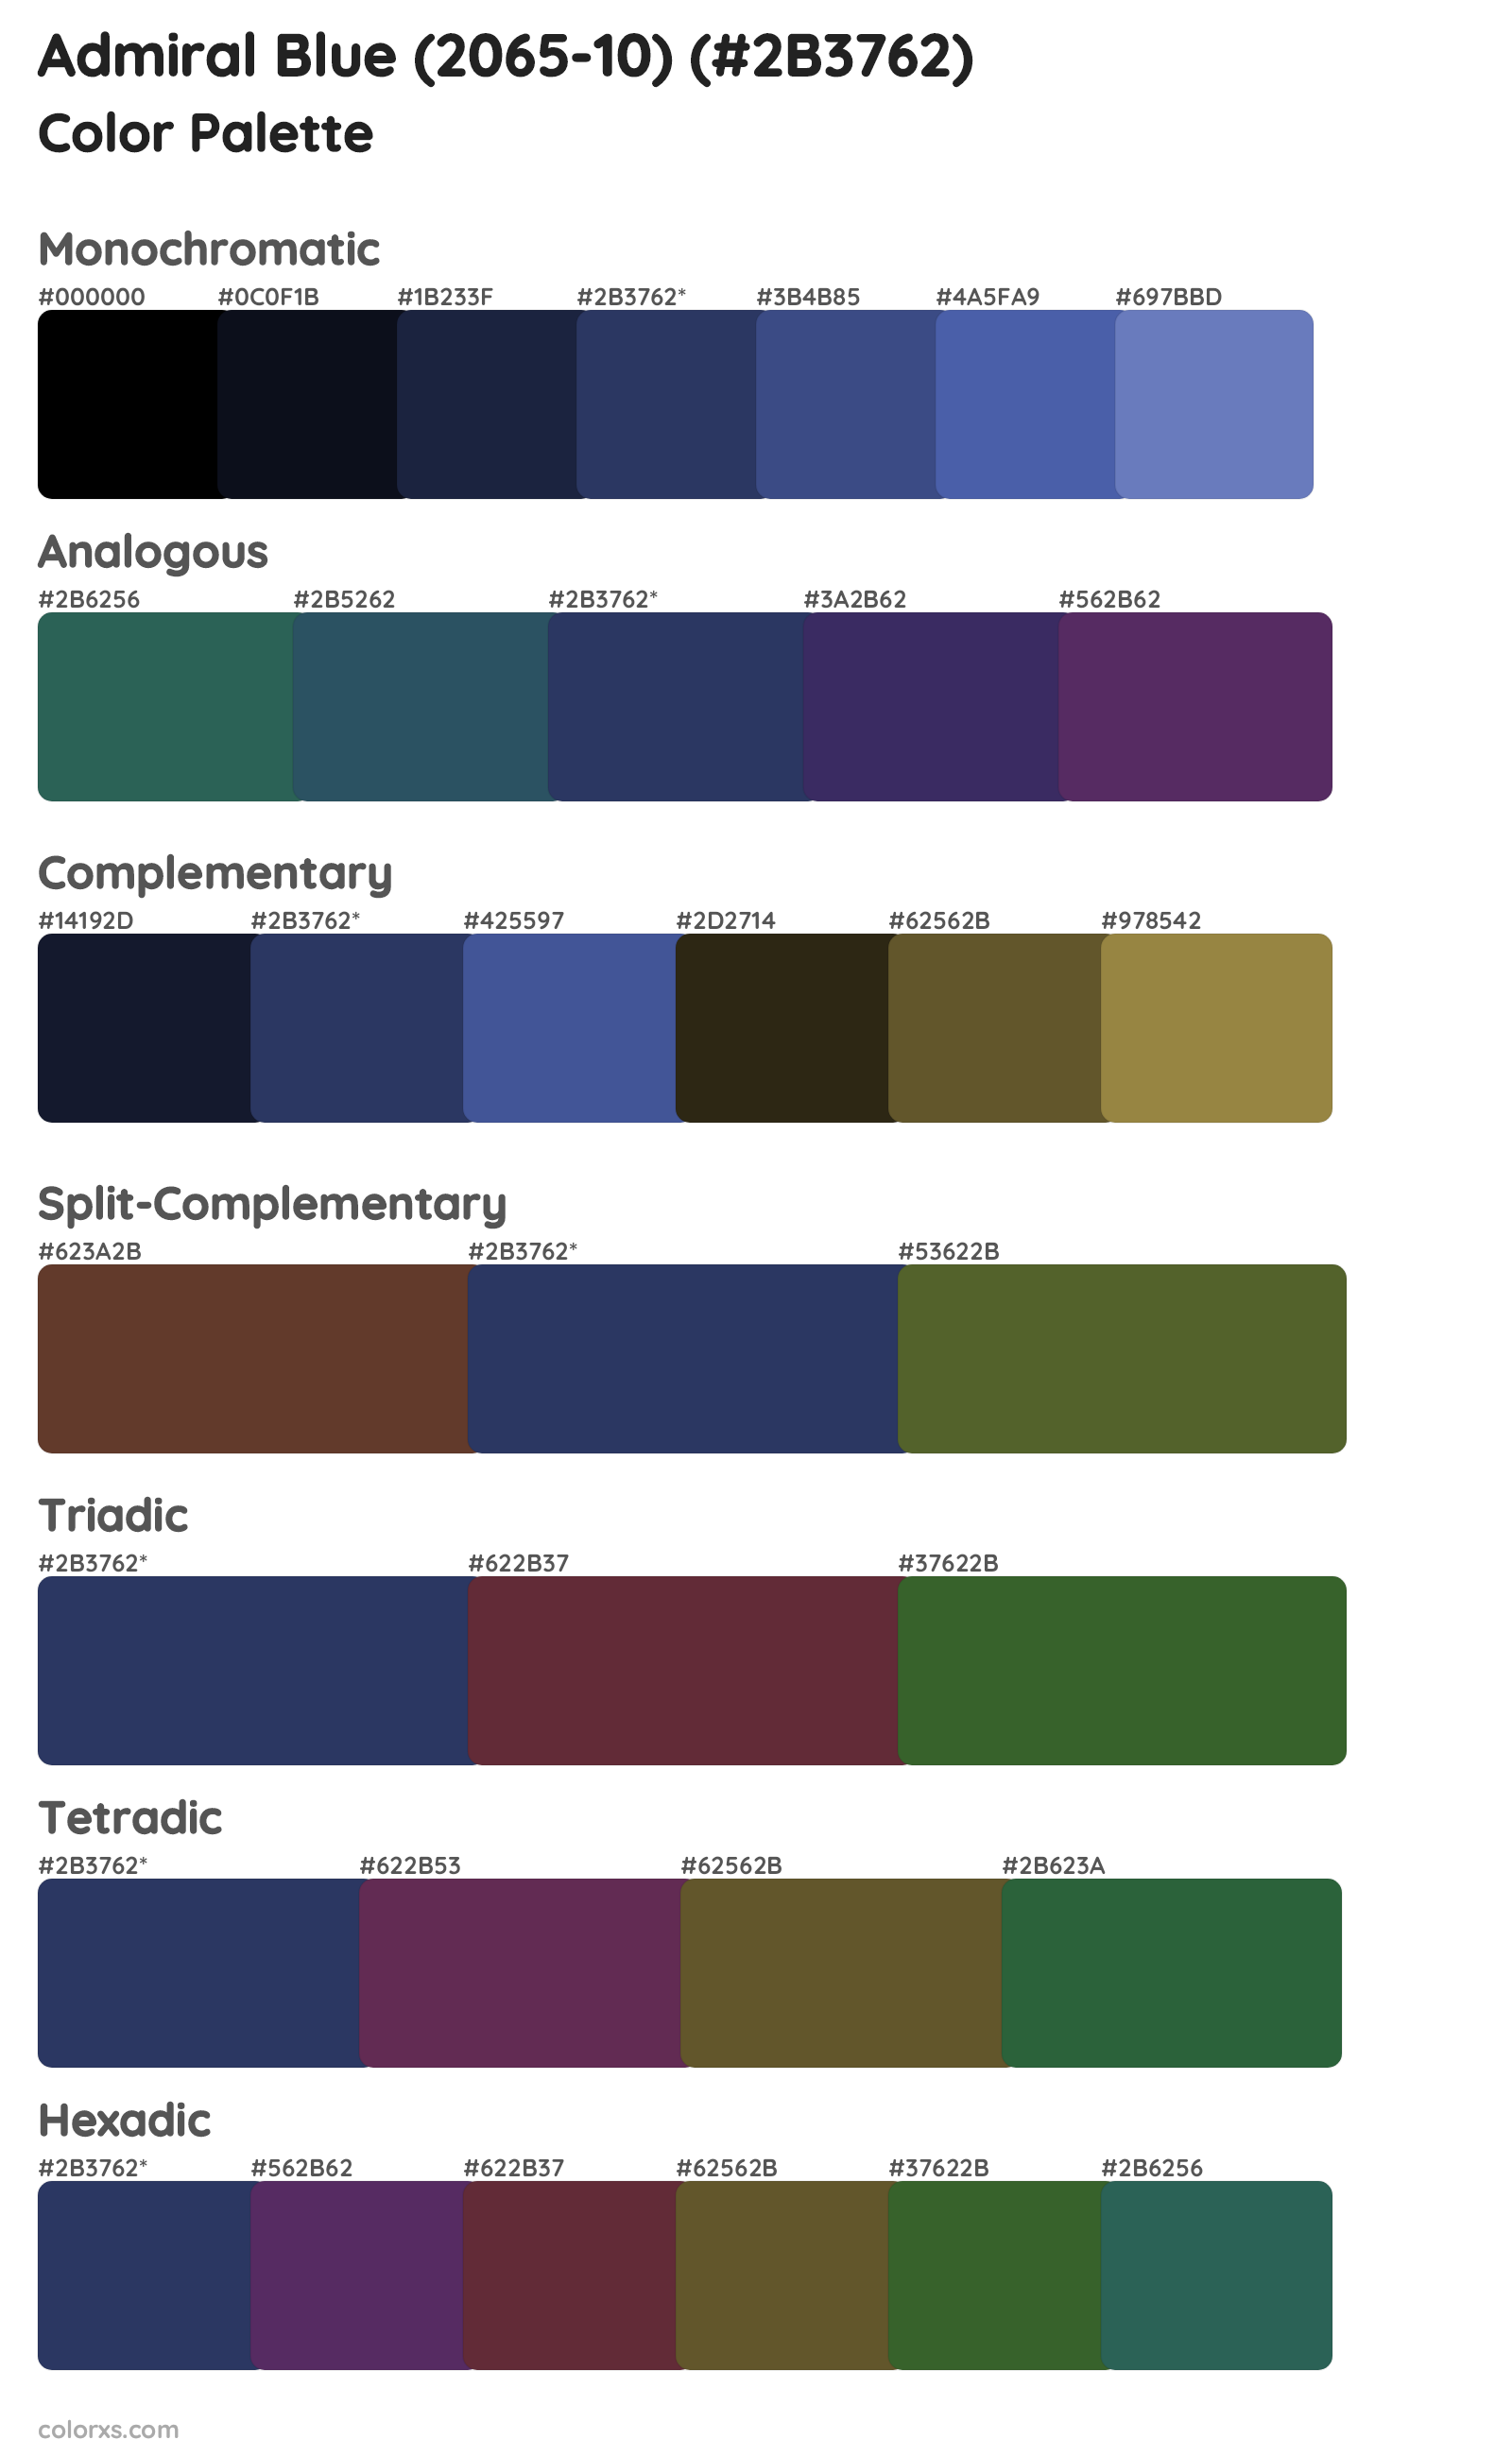 Admiral Blue (2065-10) Color Scheme Palettes